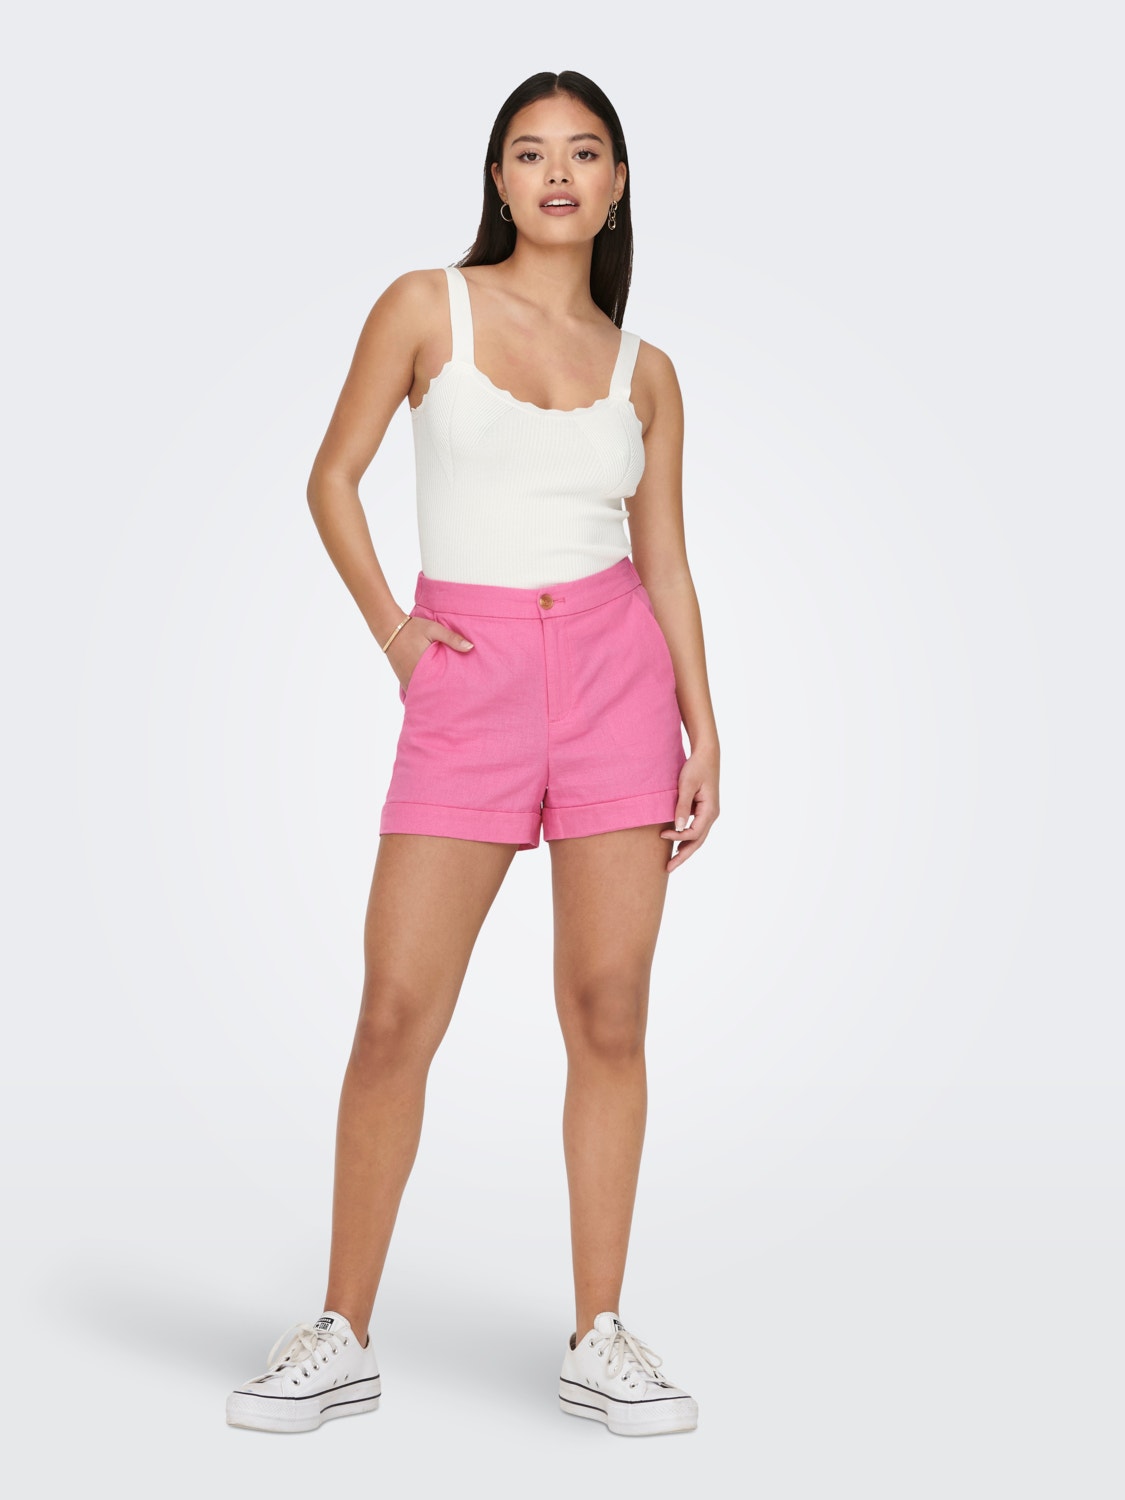 OYSHO Women's Size Large Faded Pink 100% Cotton Chiffon Shorts NWT